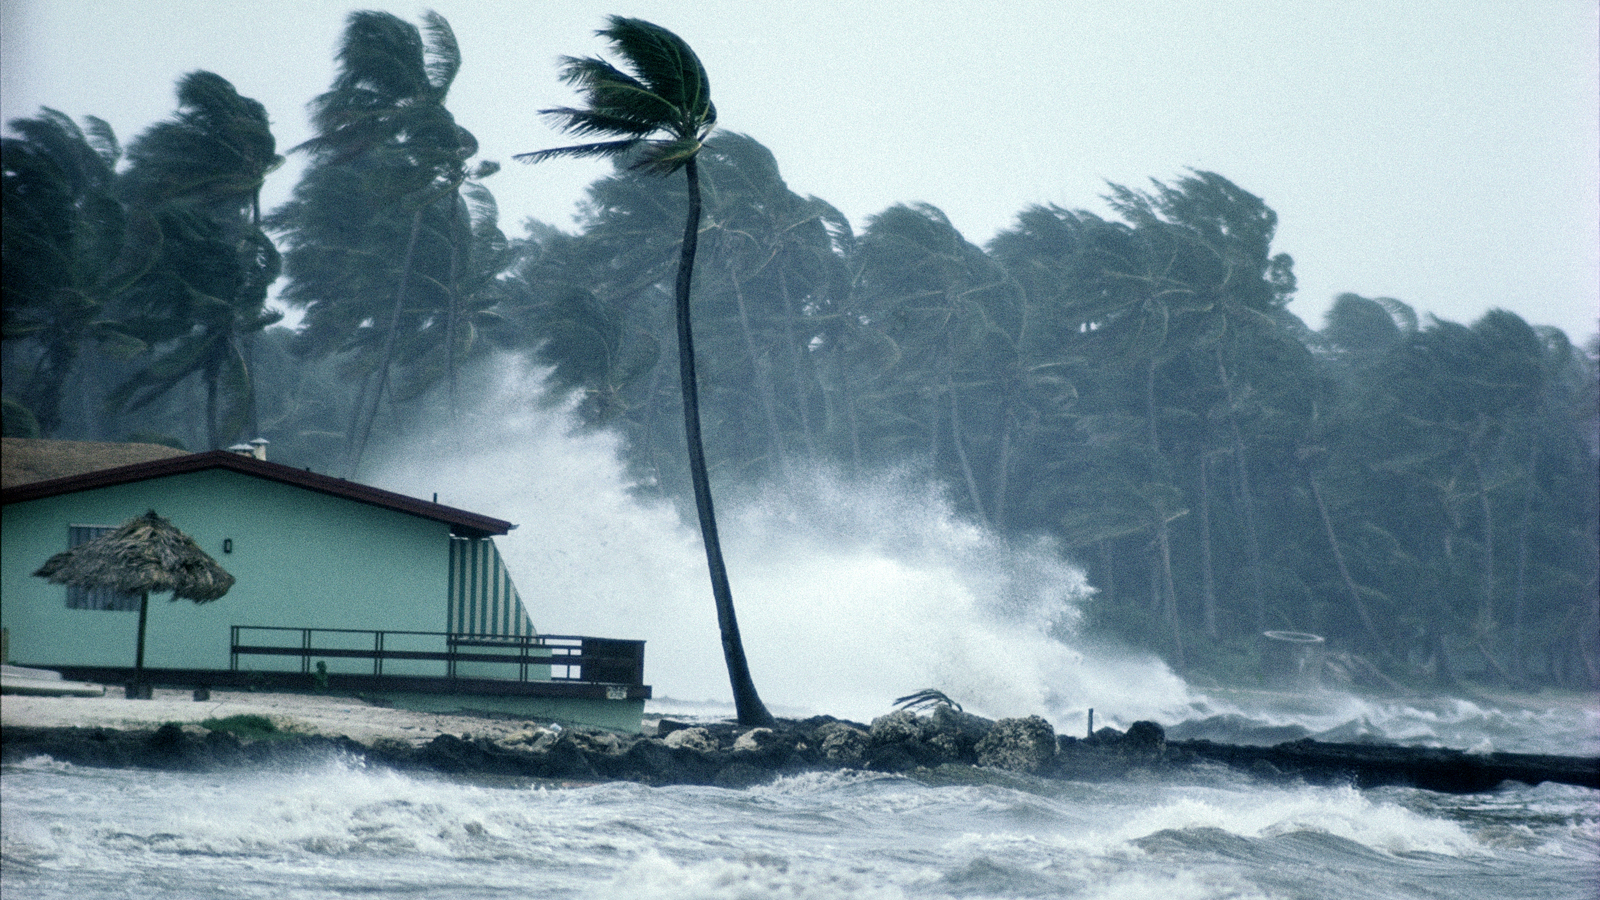 الإعصار الرعدية المصحوبة المحيطات الإعصار وتتكون فوق القمعي العاصفة العاصفة الحلزوني غزيرة برياح وأمطار قوية العاصفة المصحوبة